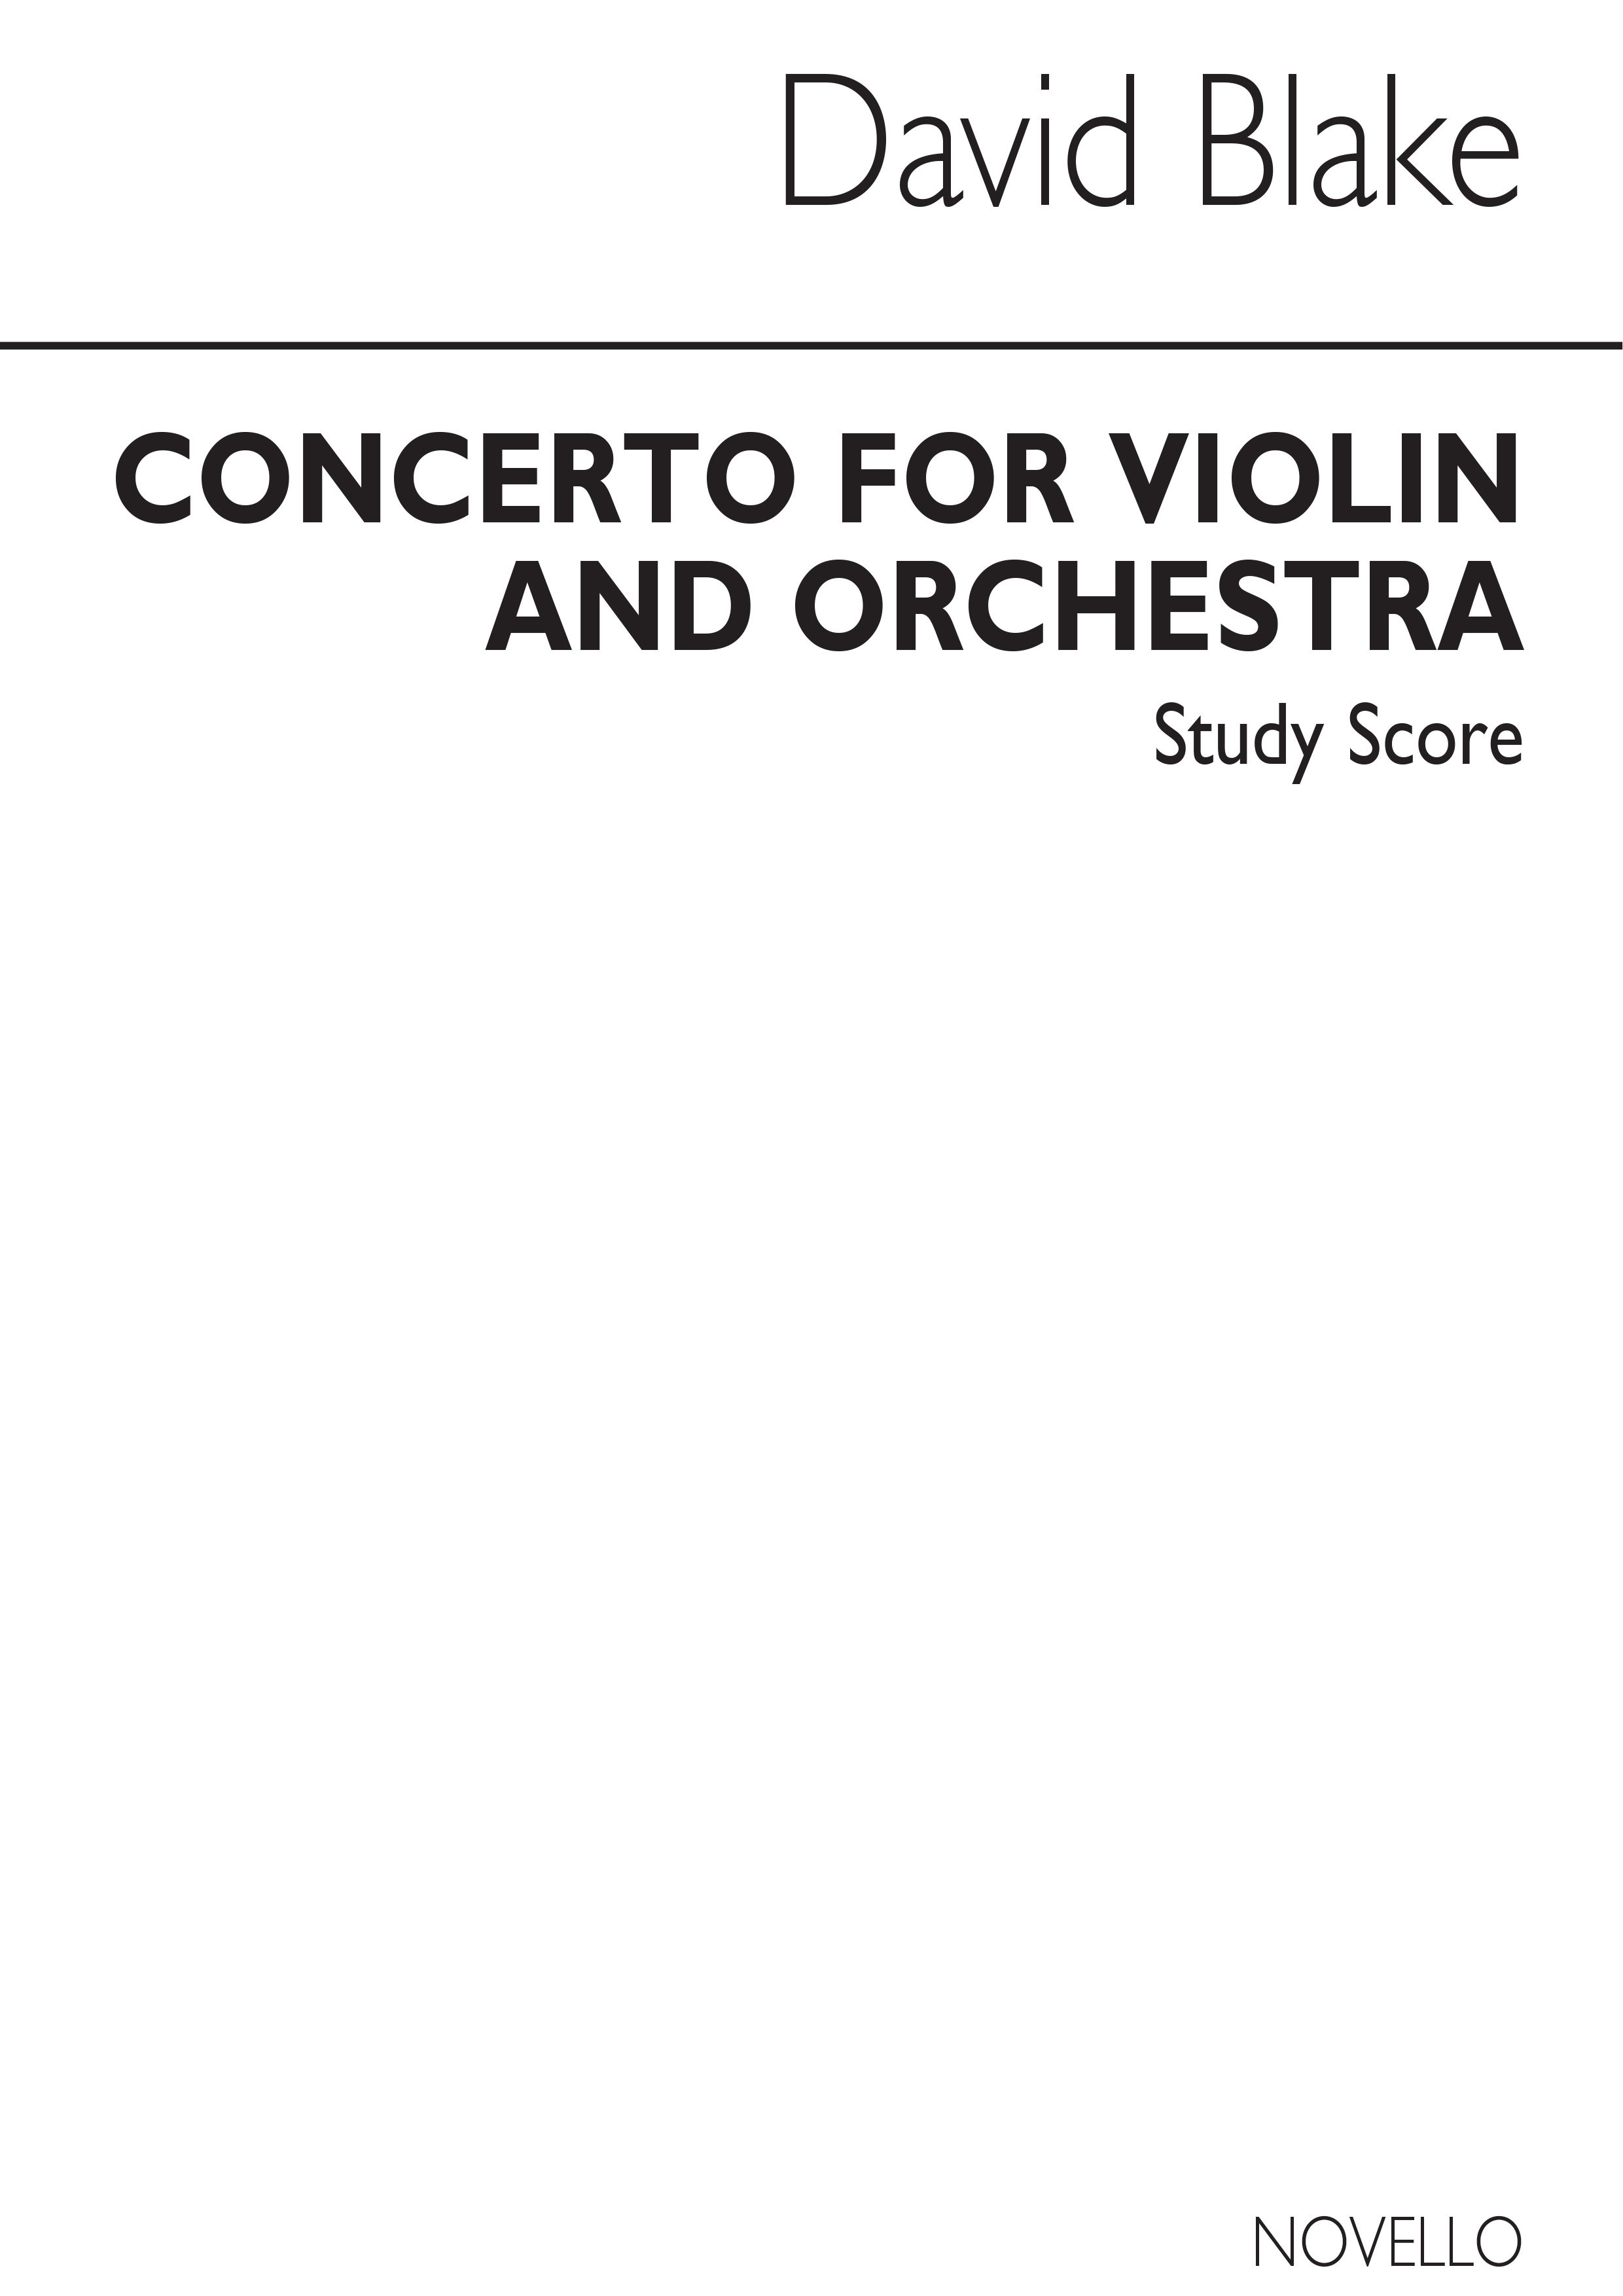 David Blake: Concerto For Violin